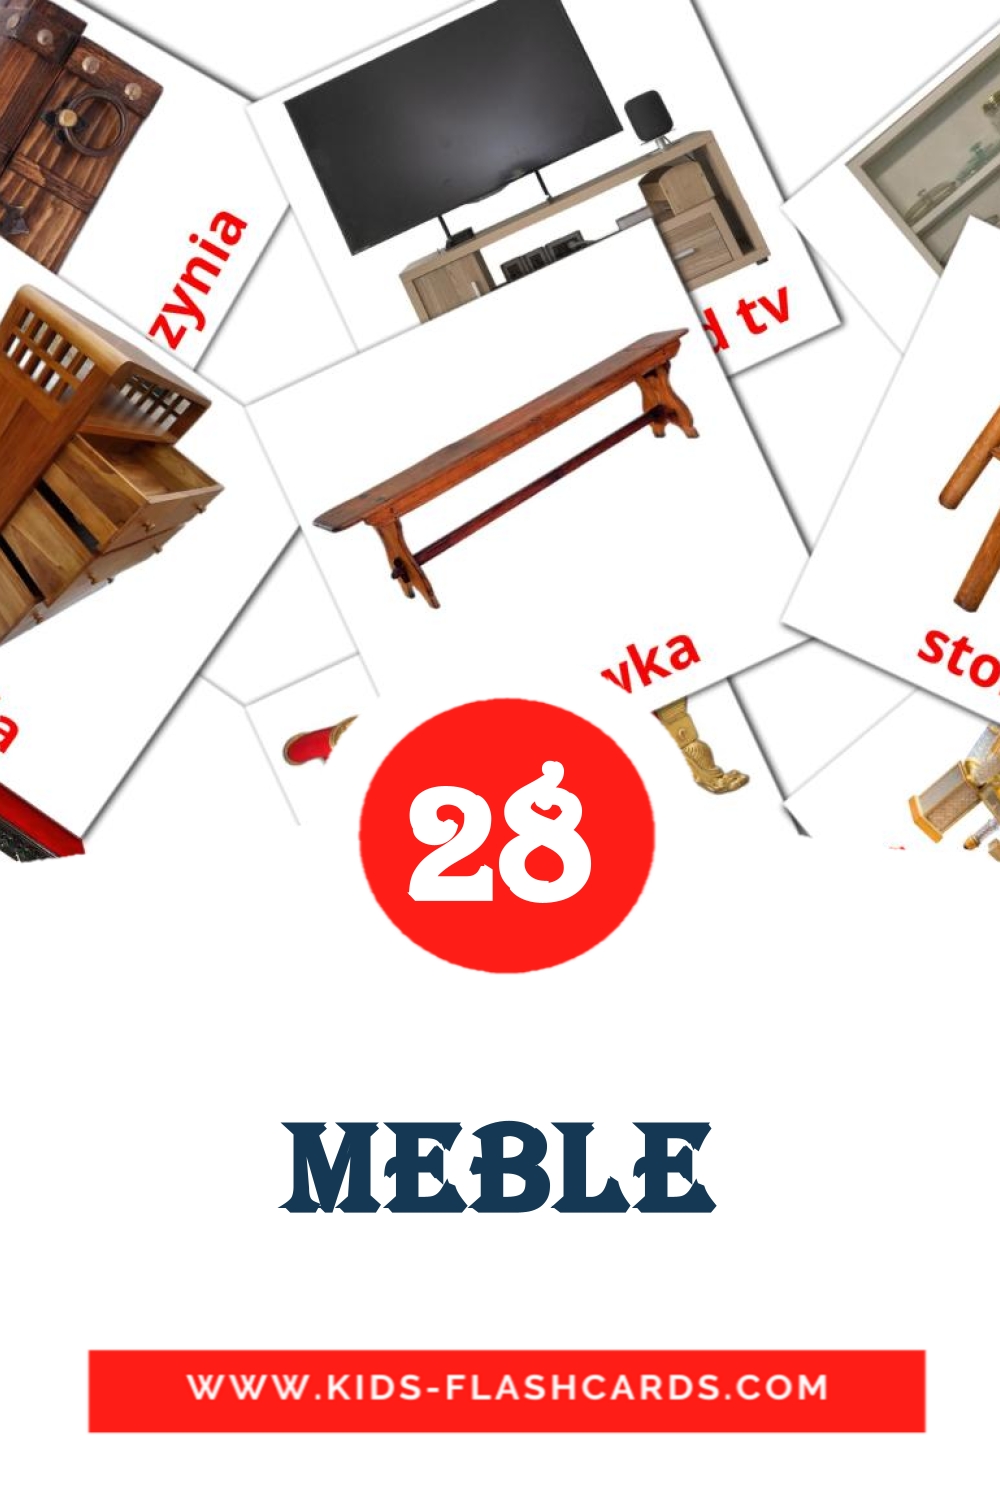 Meble на польском для Детского Сада (28 карточек)